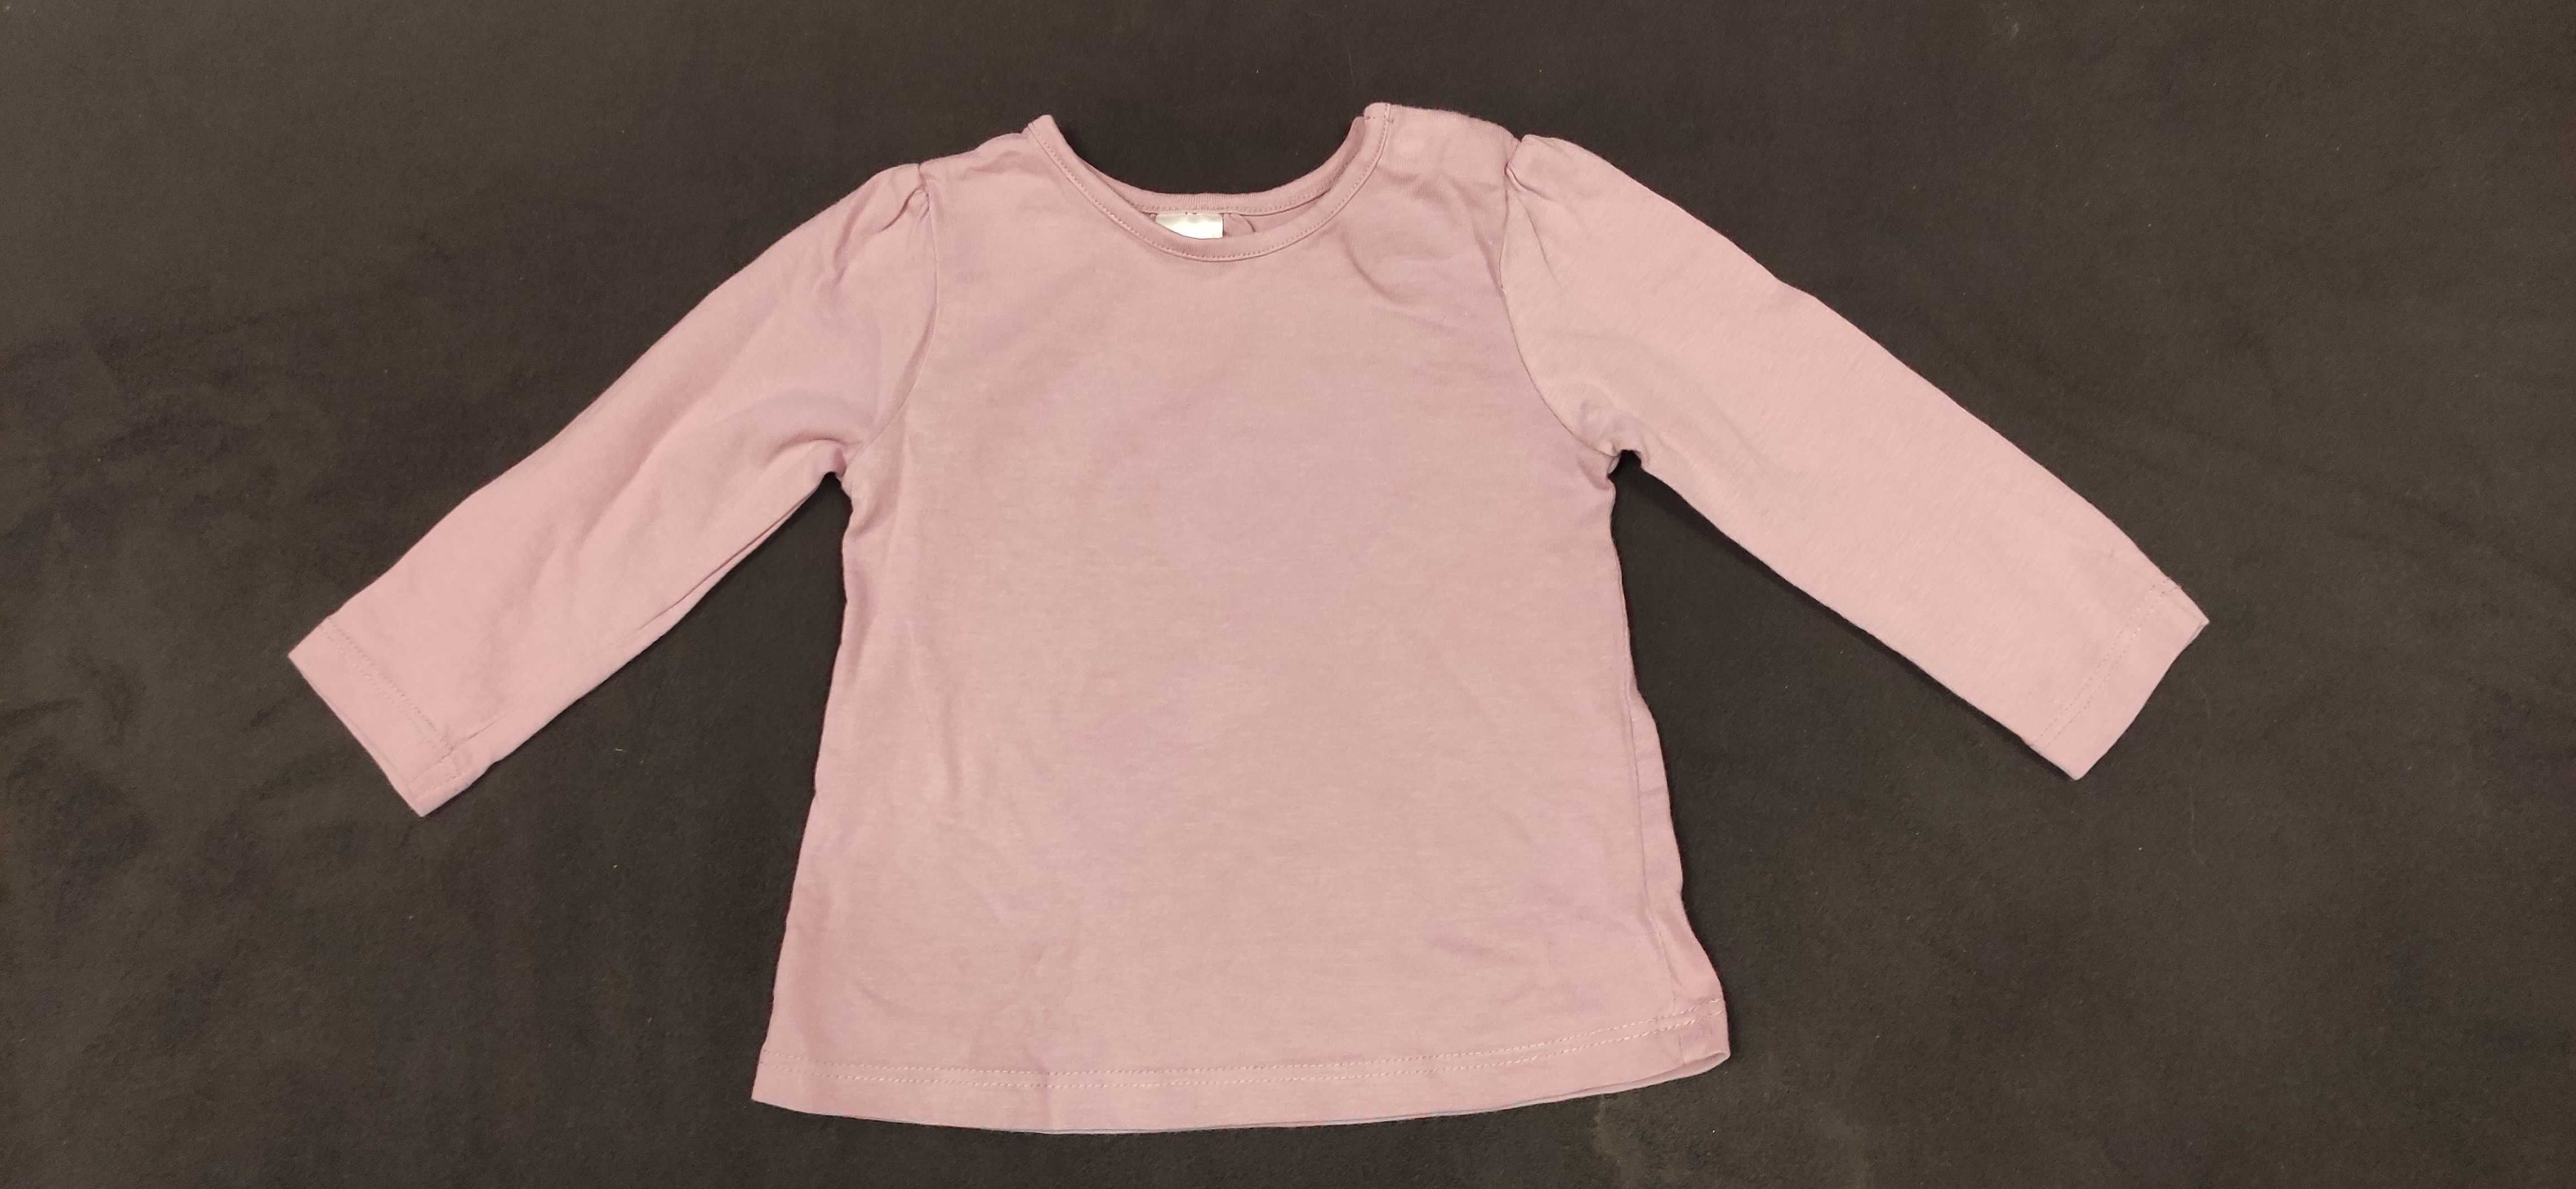 Bluzeczka różowa 68 cm Baby Club NOWA